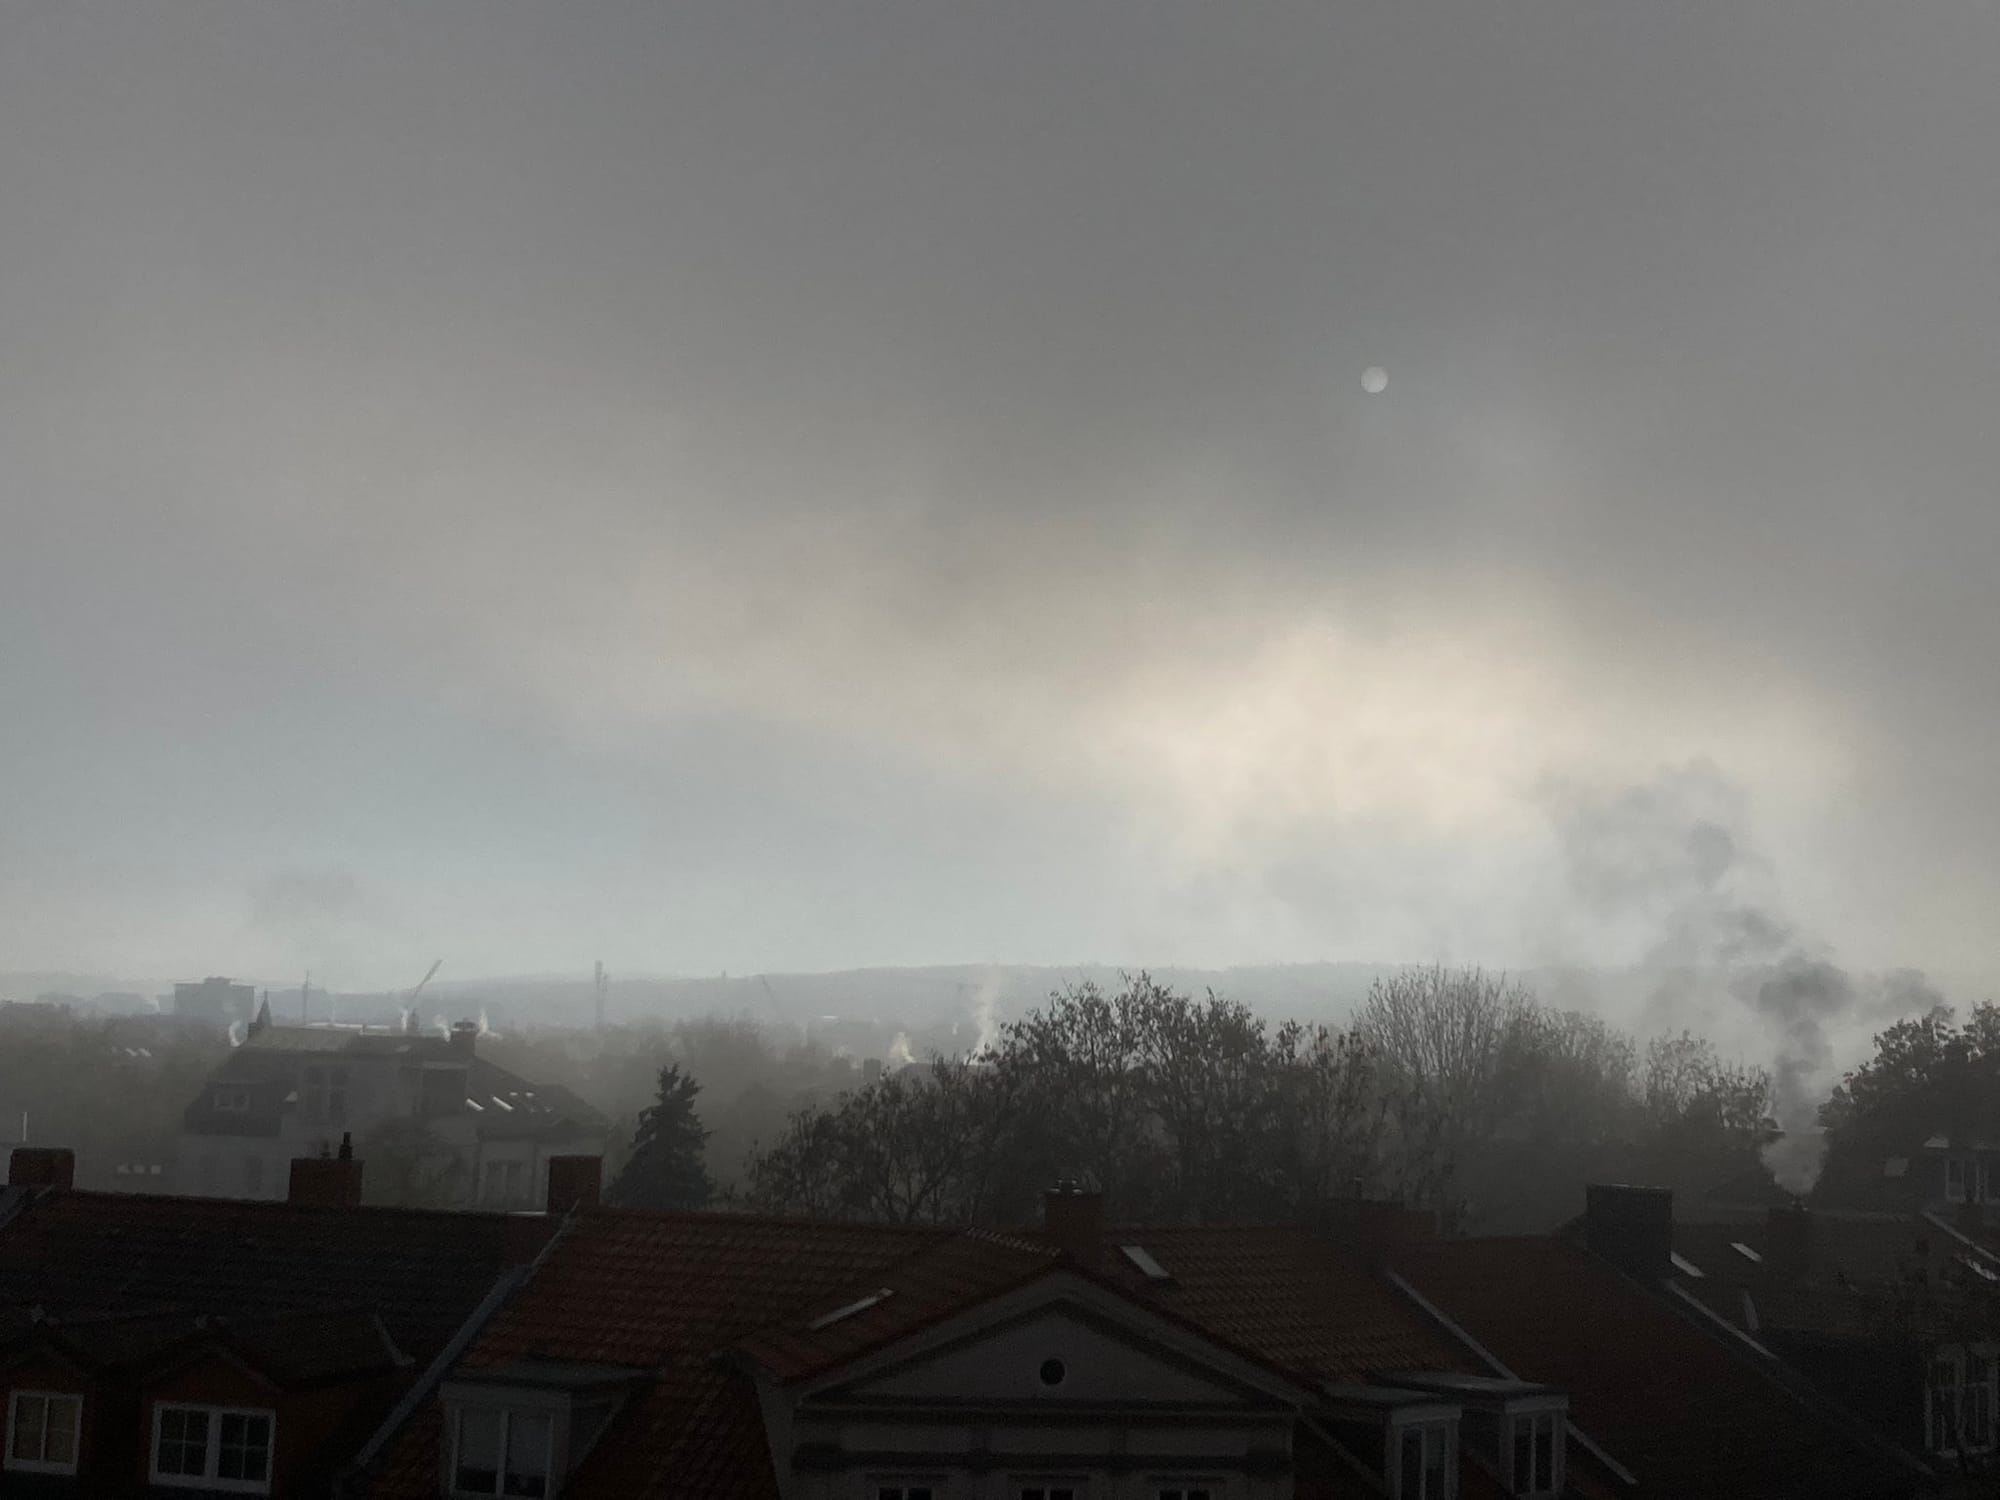 Nebel über Erfurt. Das Bild ist düster, Graz. Ein wenig Licht schimmert.